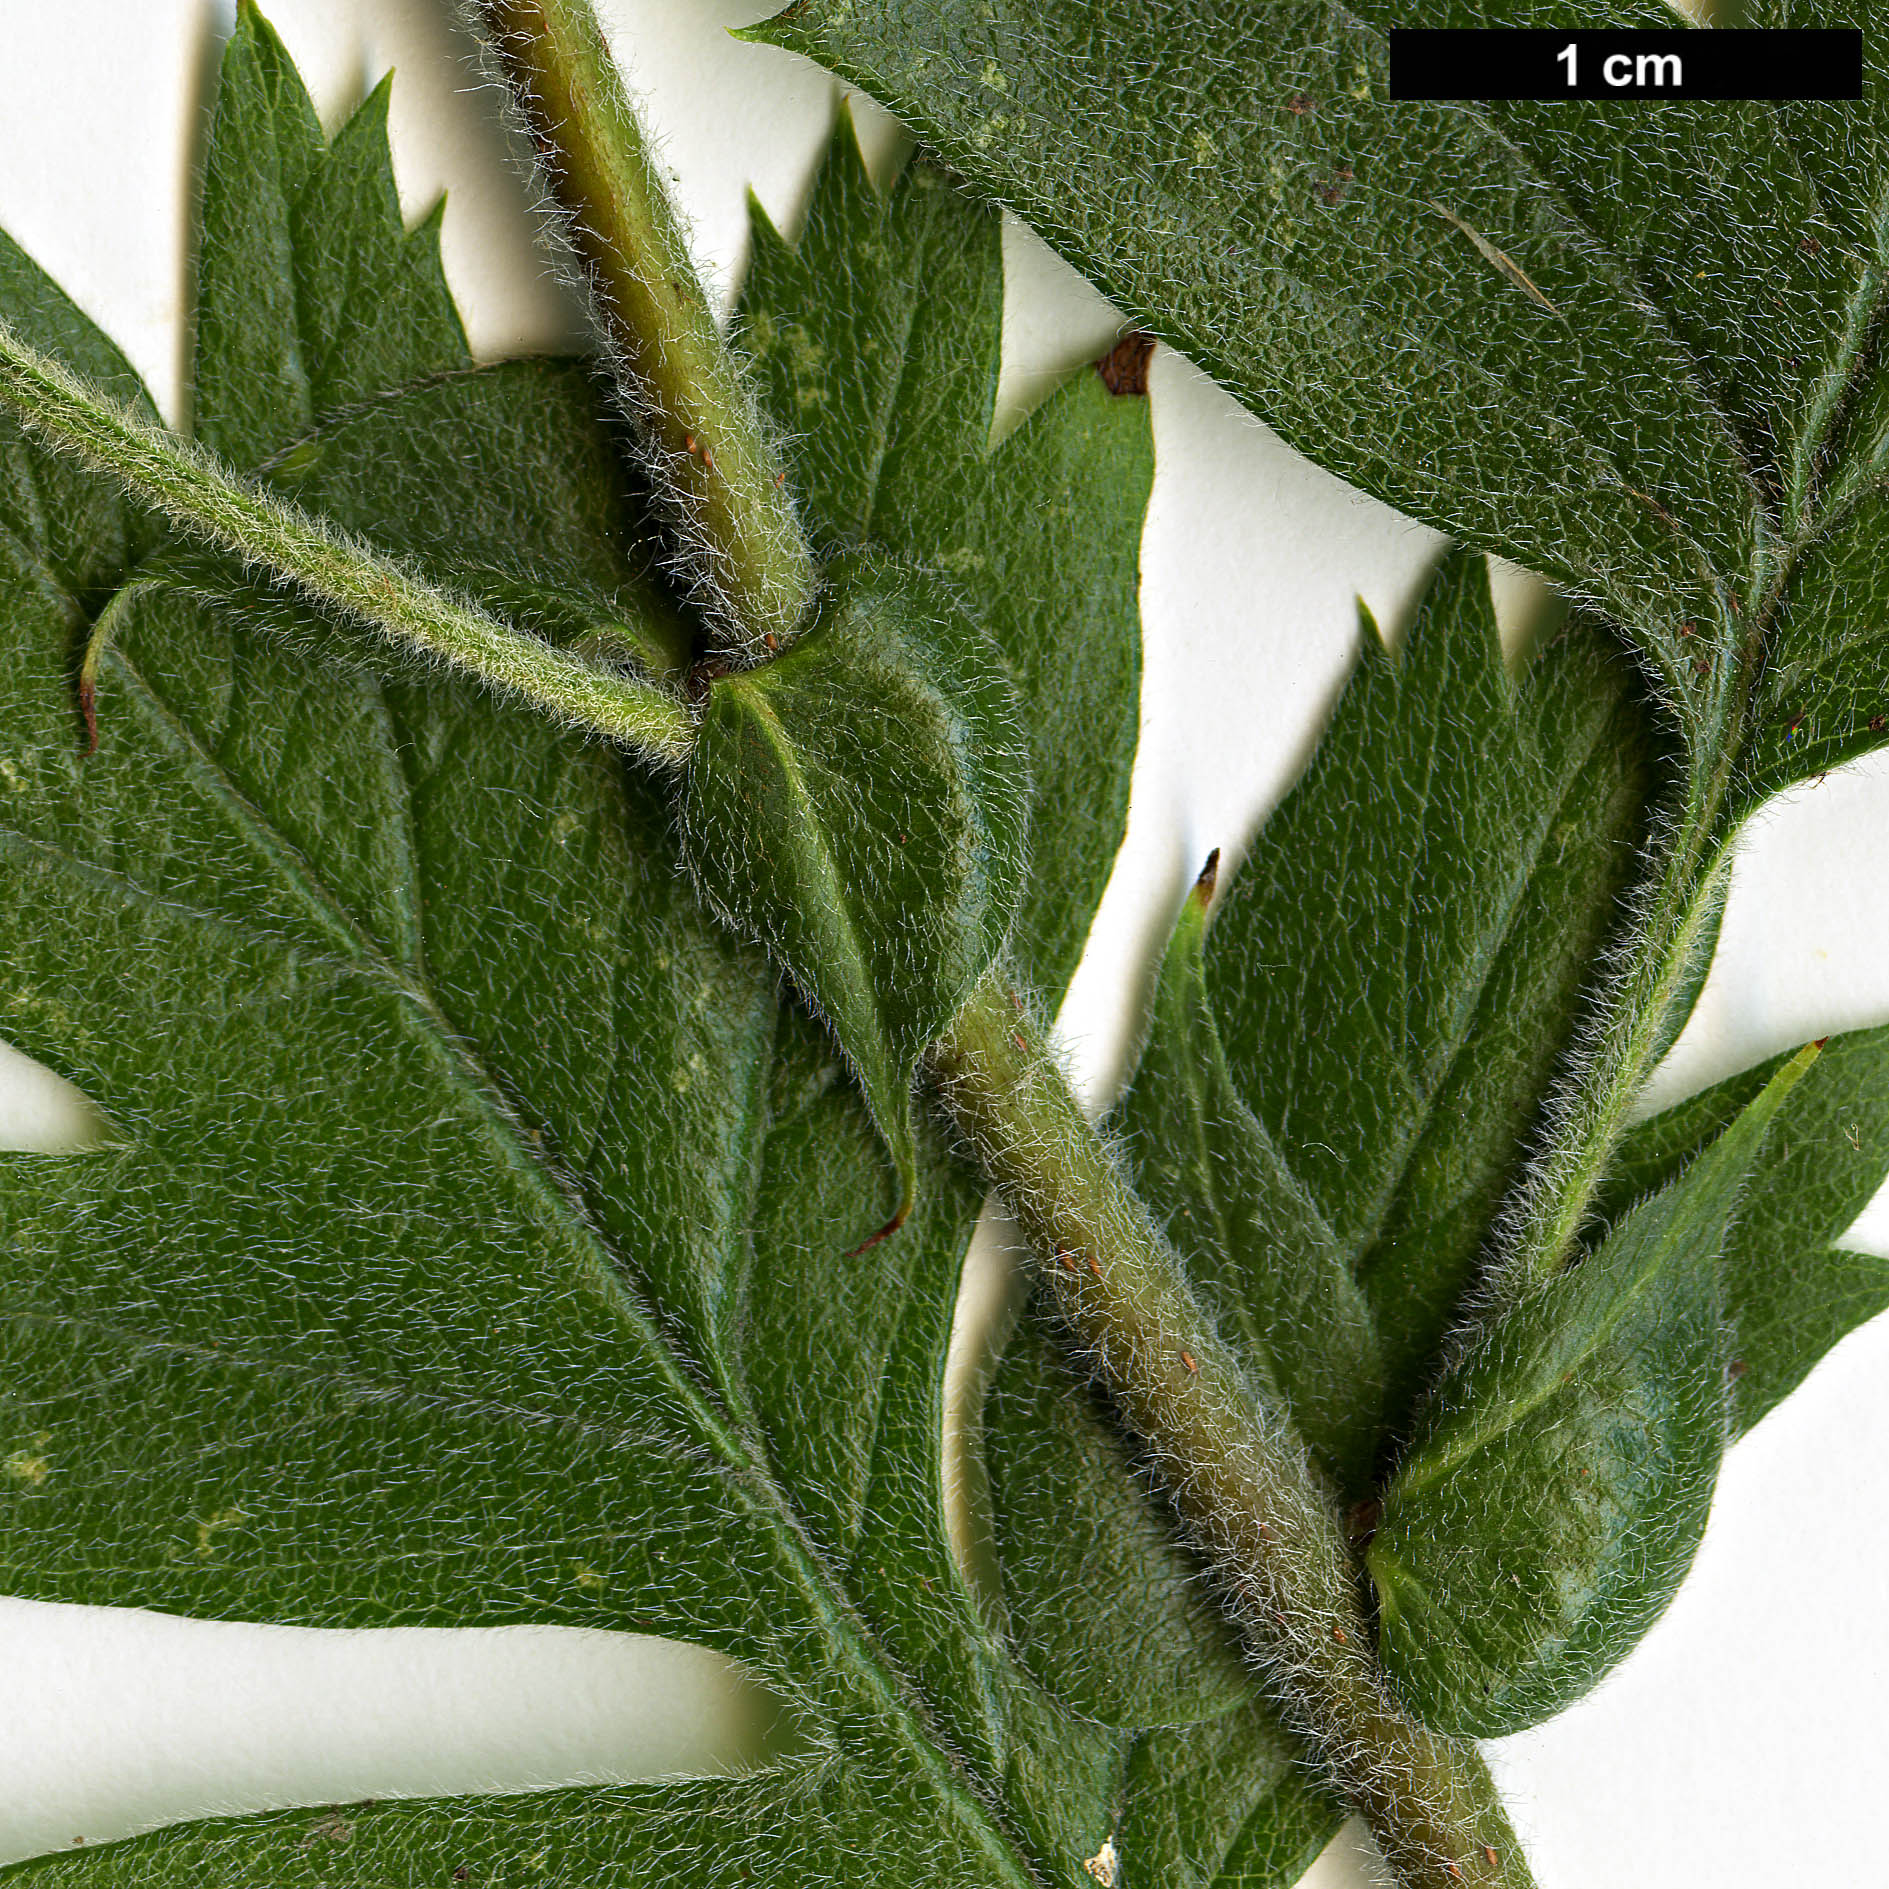 High resolution image: Family: Rosaceae - Genus: Crataegus - Taxon: schraederiana